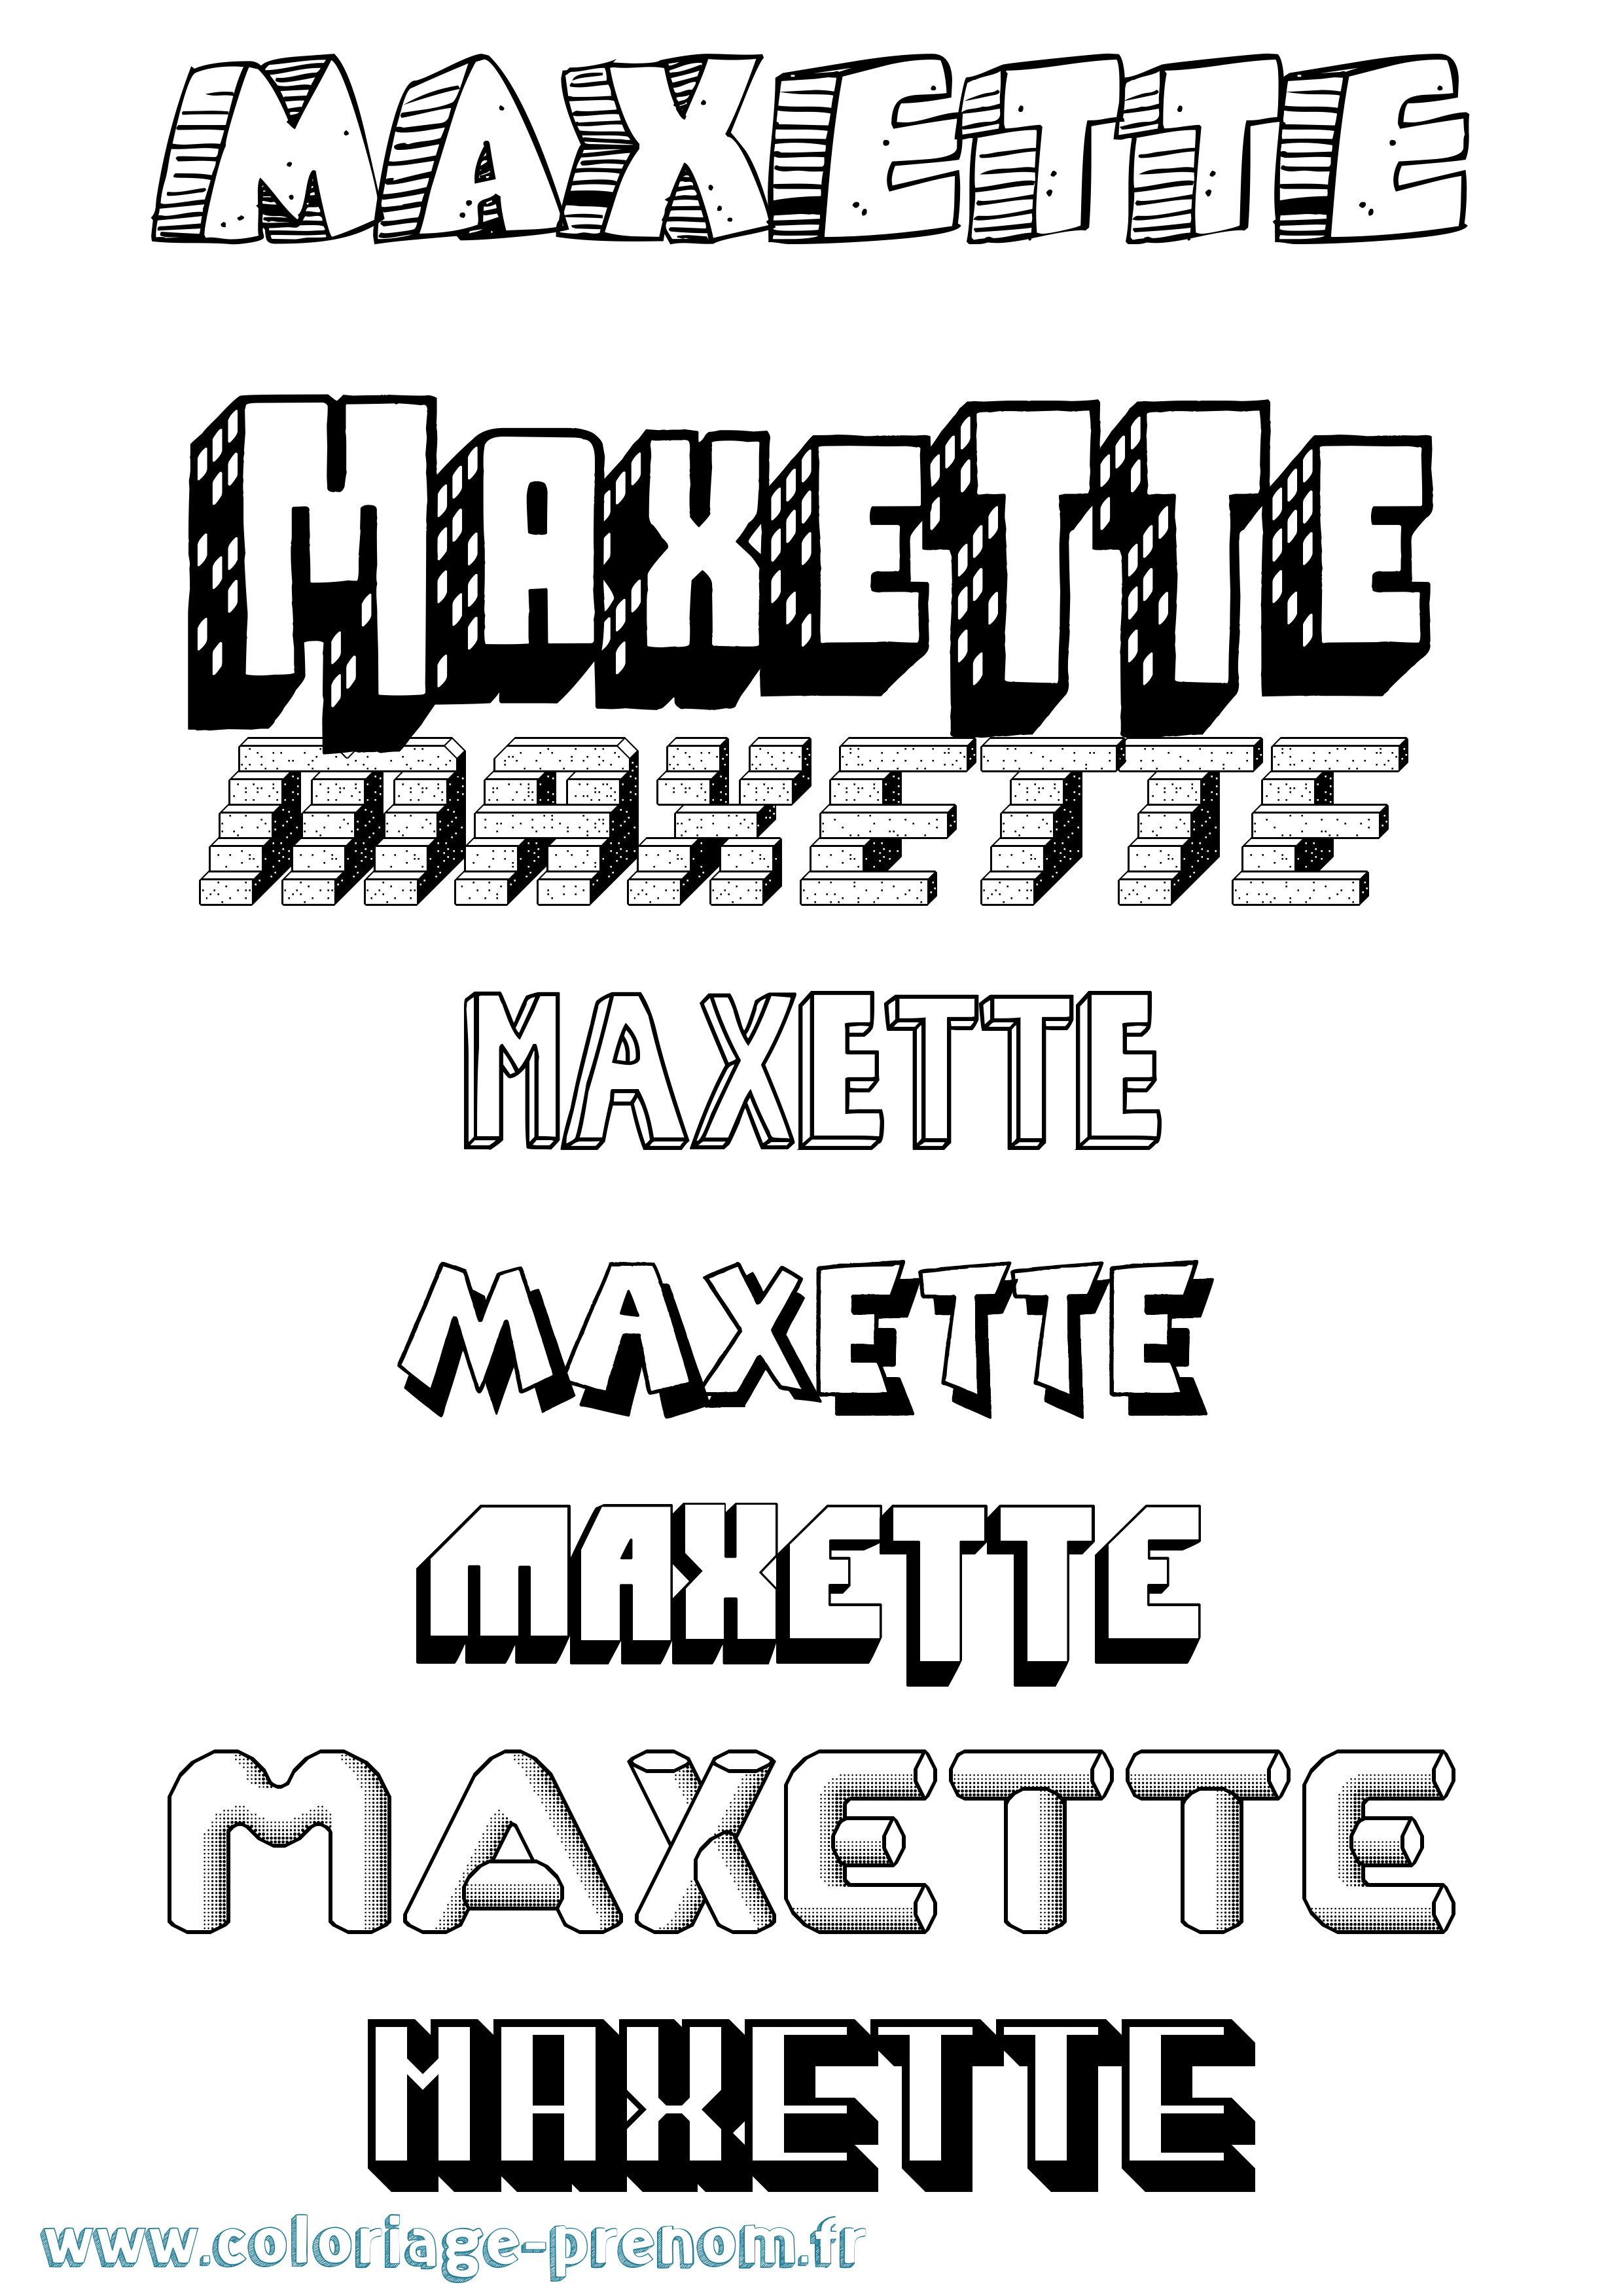 Coloriage prénom Maxette Effet 3D